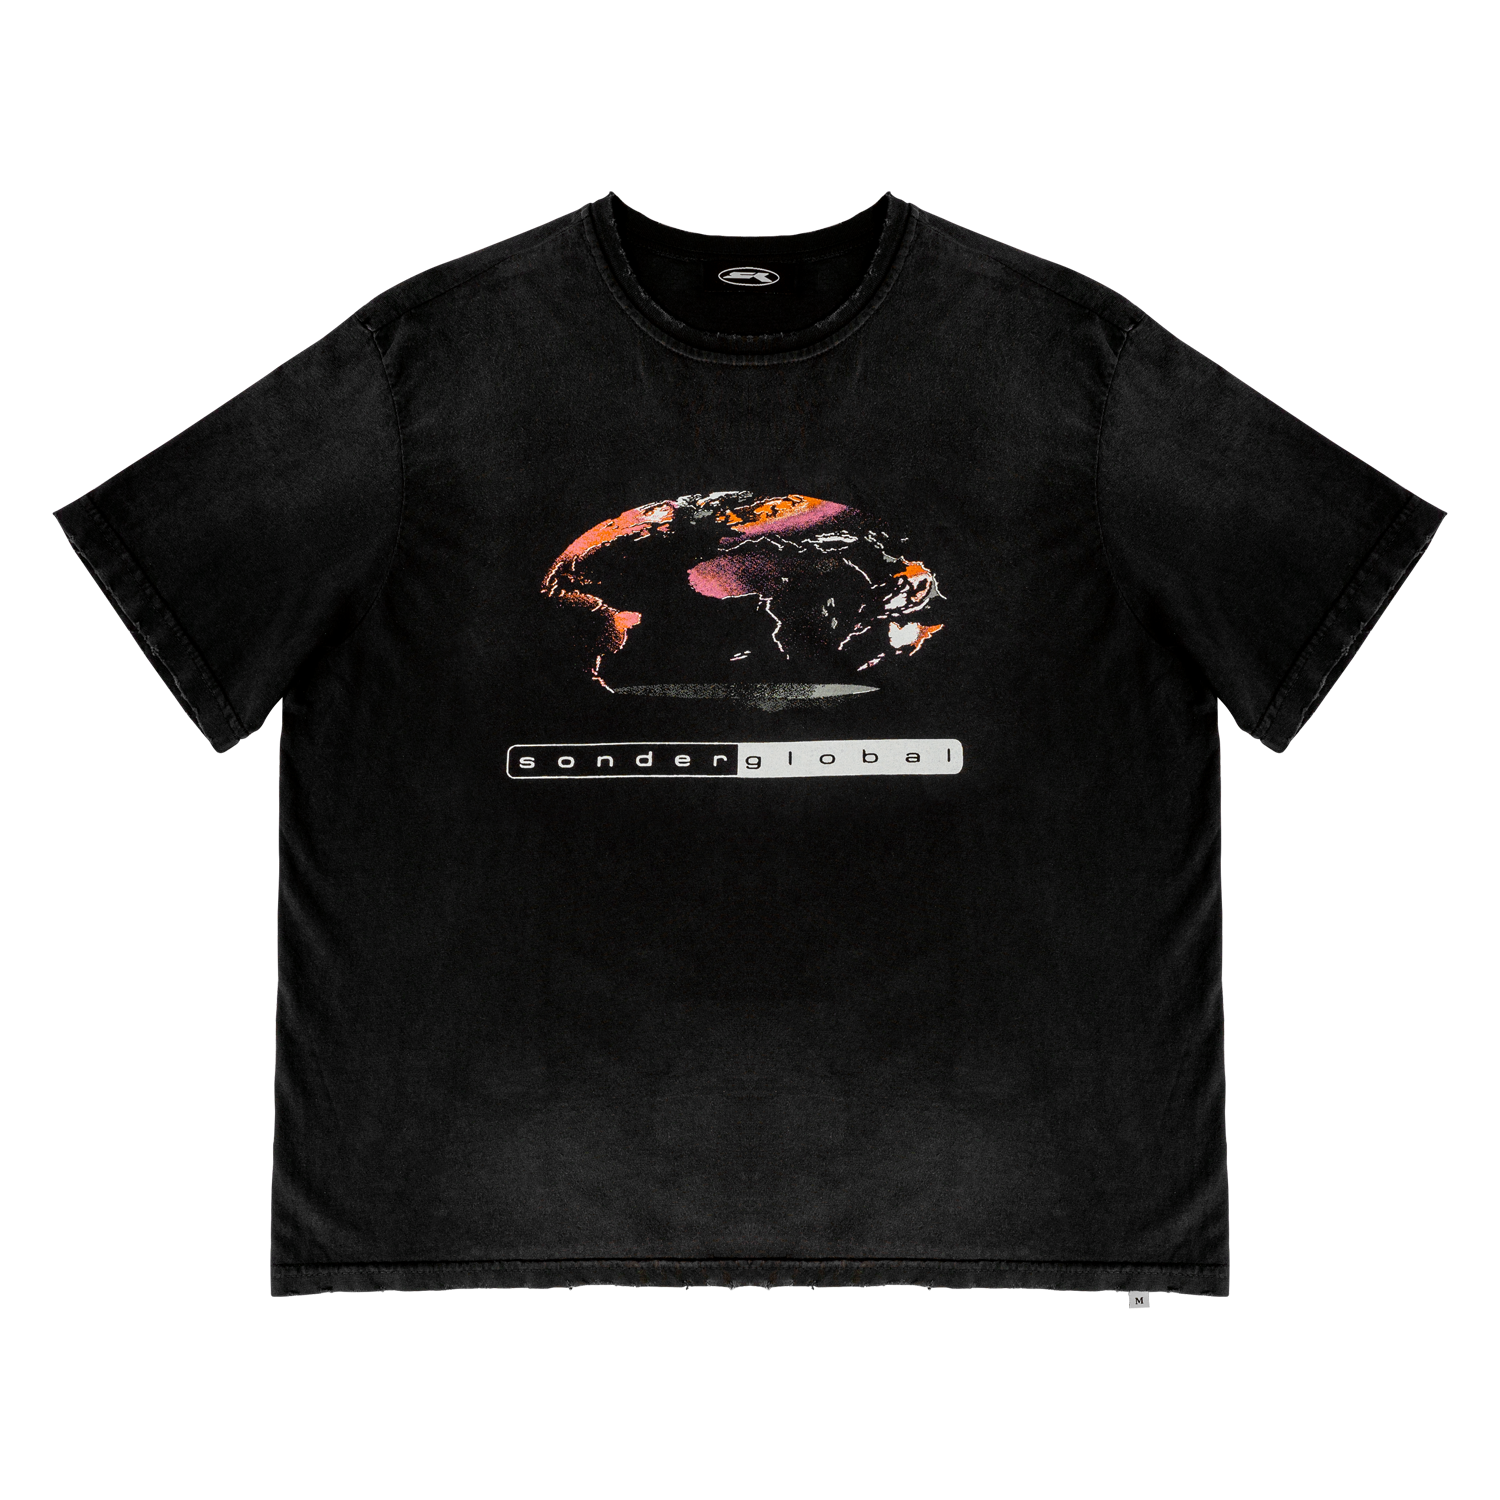 Washed Black Sonder Global T-Shirt